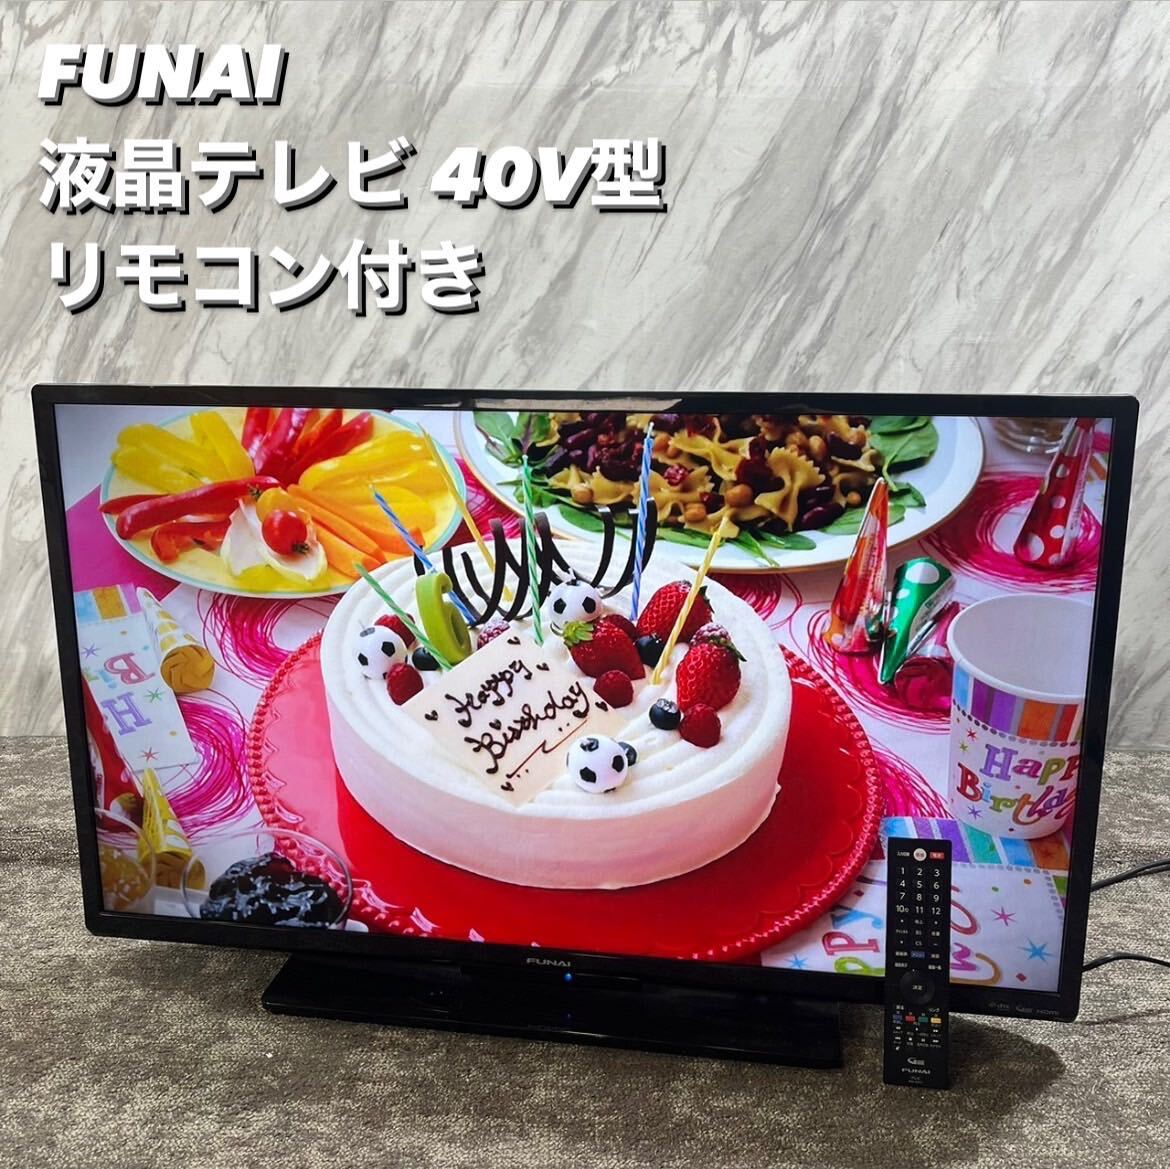 FUNAI 液晶テレビ FL-40H1010 40V型 2019年製 R220